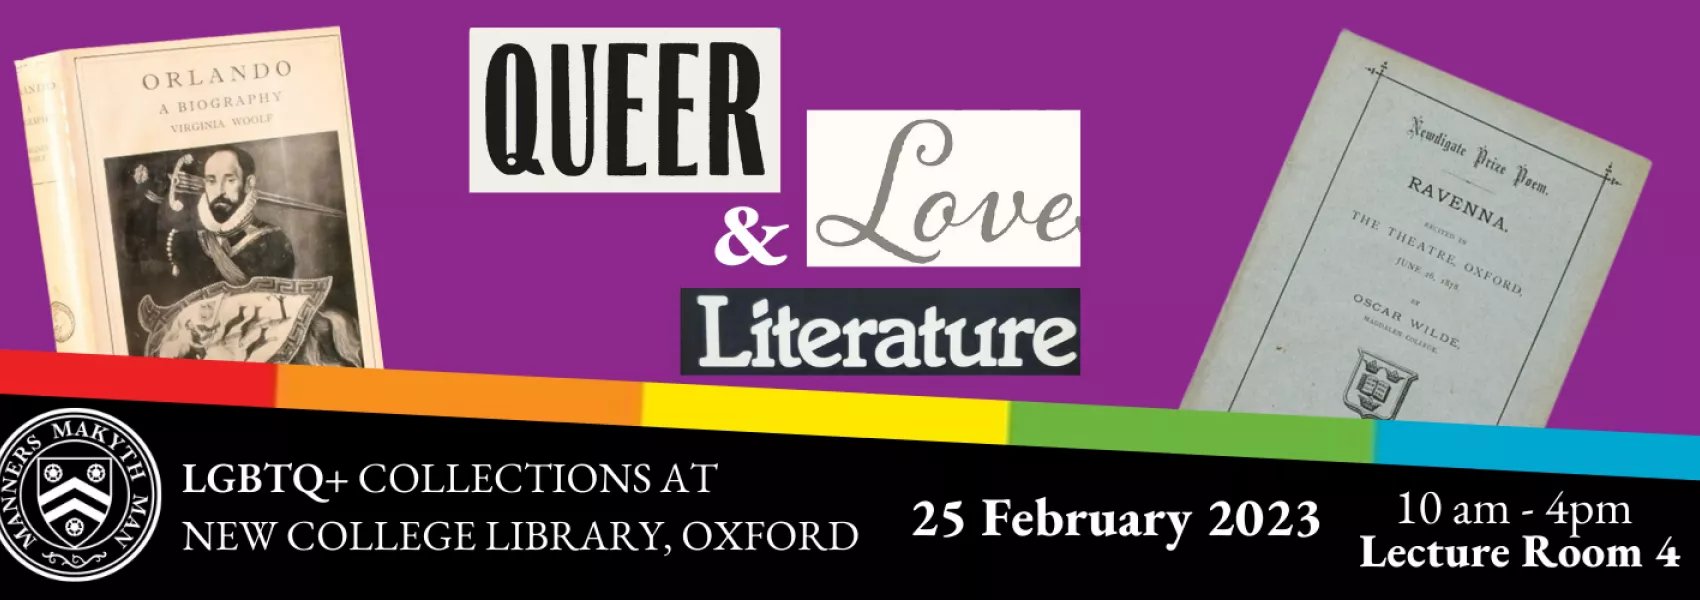 Queer Love & Literature